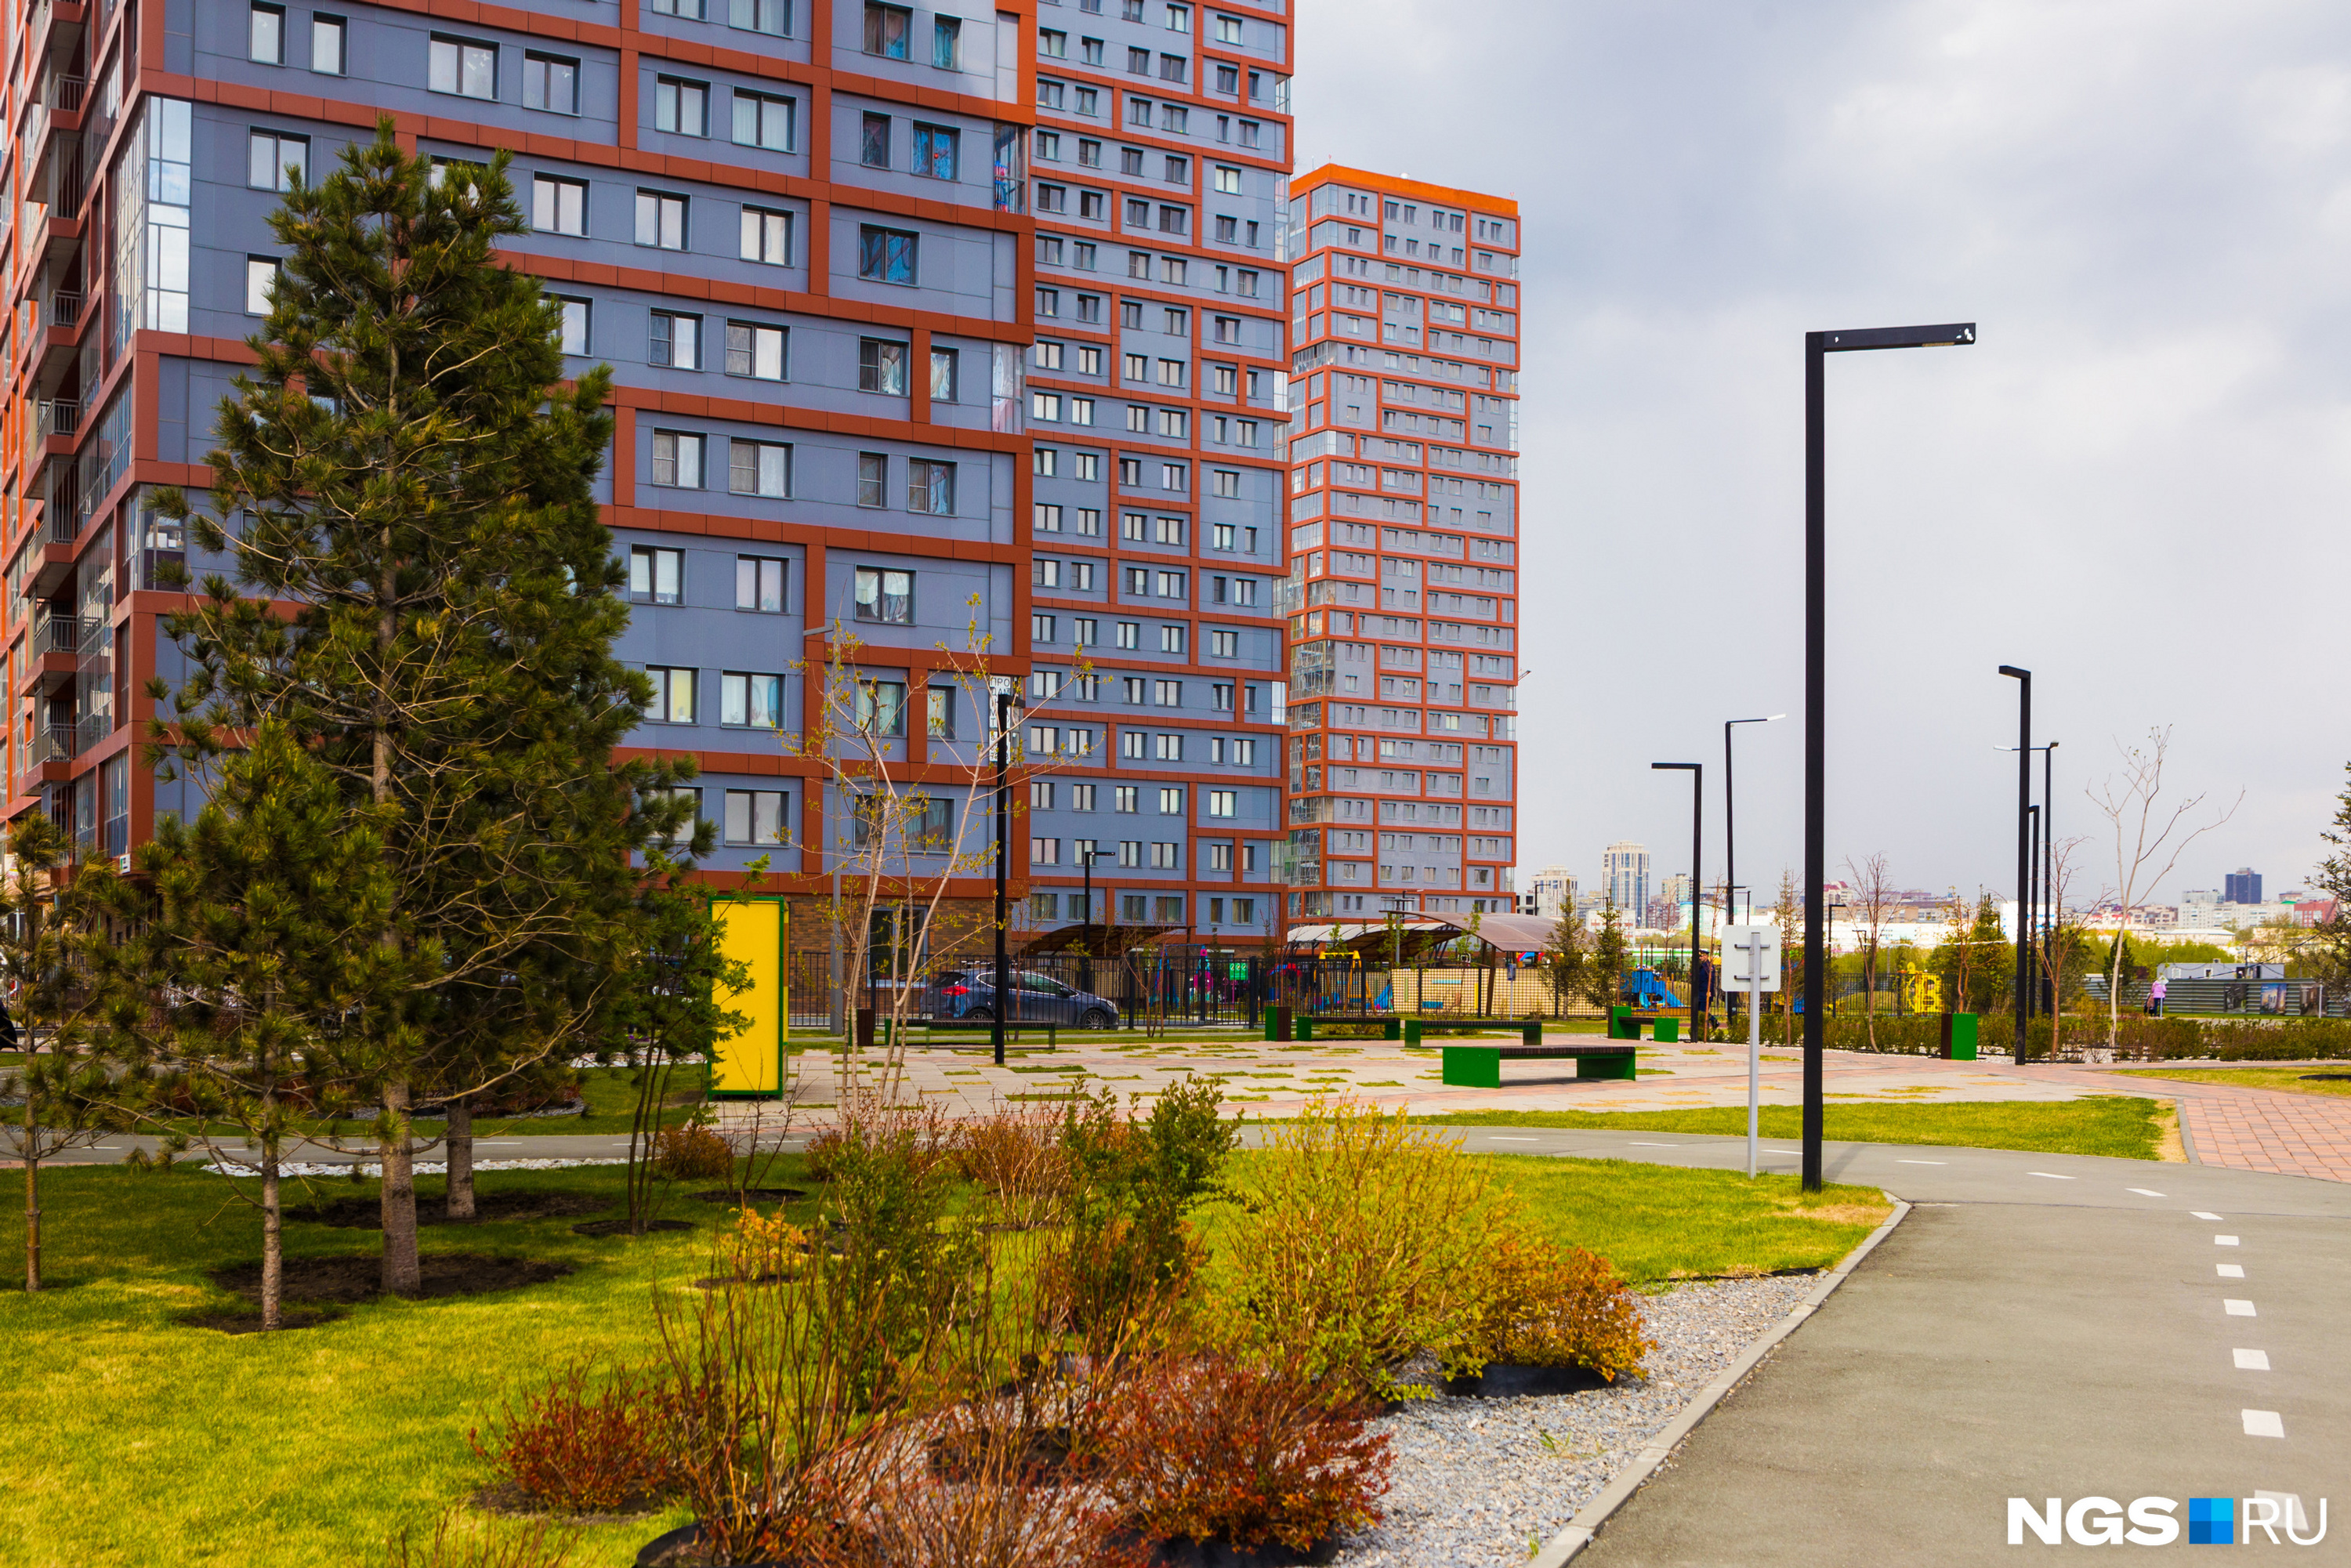 Создатели города-парка «Ясный берег» хотят развивать архитектуру Новосибирска